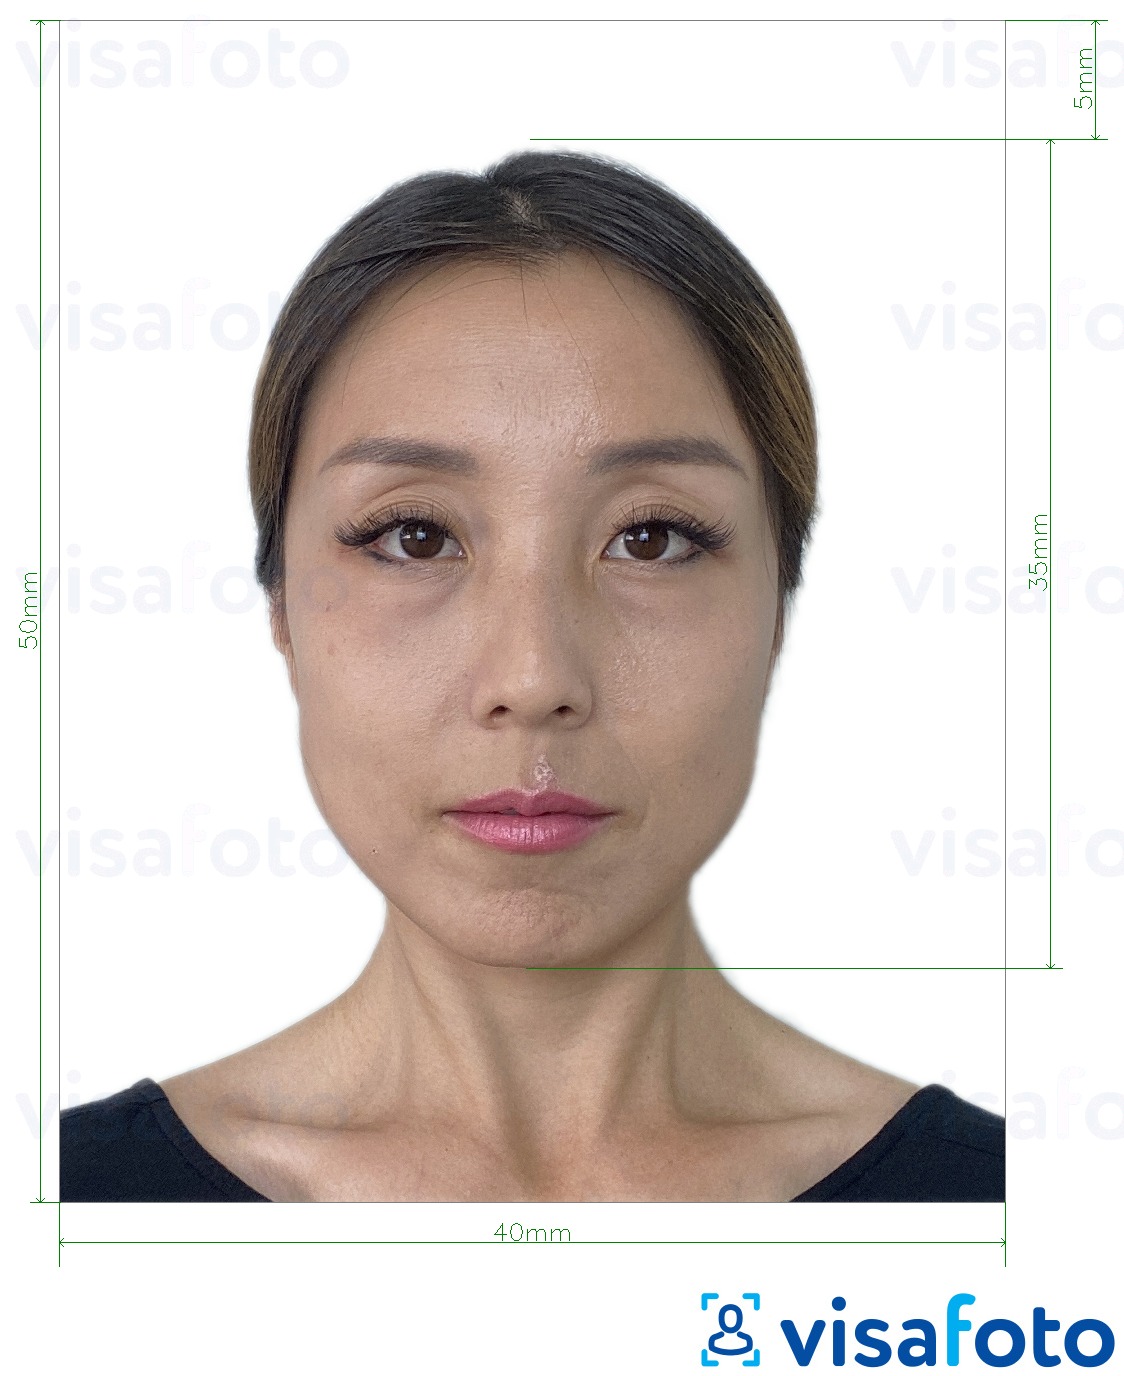 Намунаи акс барои Ҳонгконг паспорт 40х50 мм (4х5 см) бо андозаи дақиқ